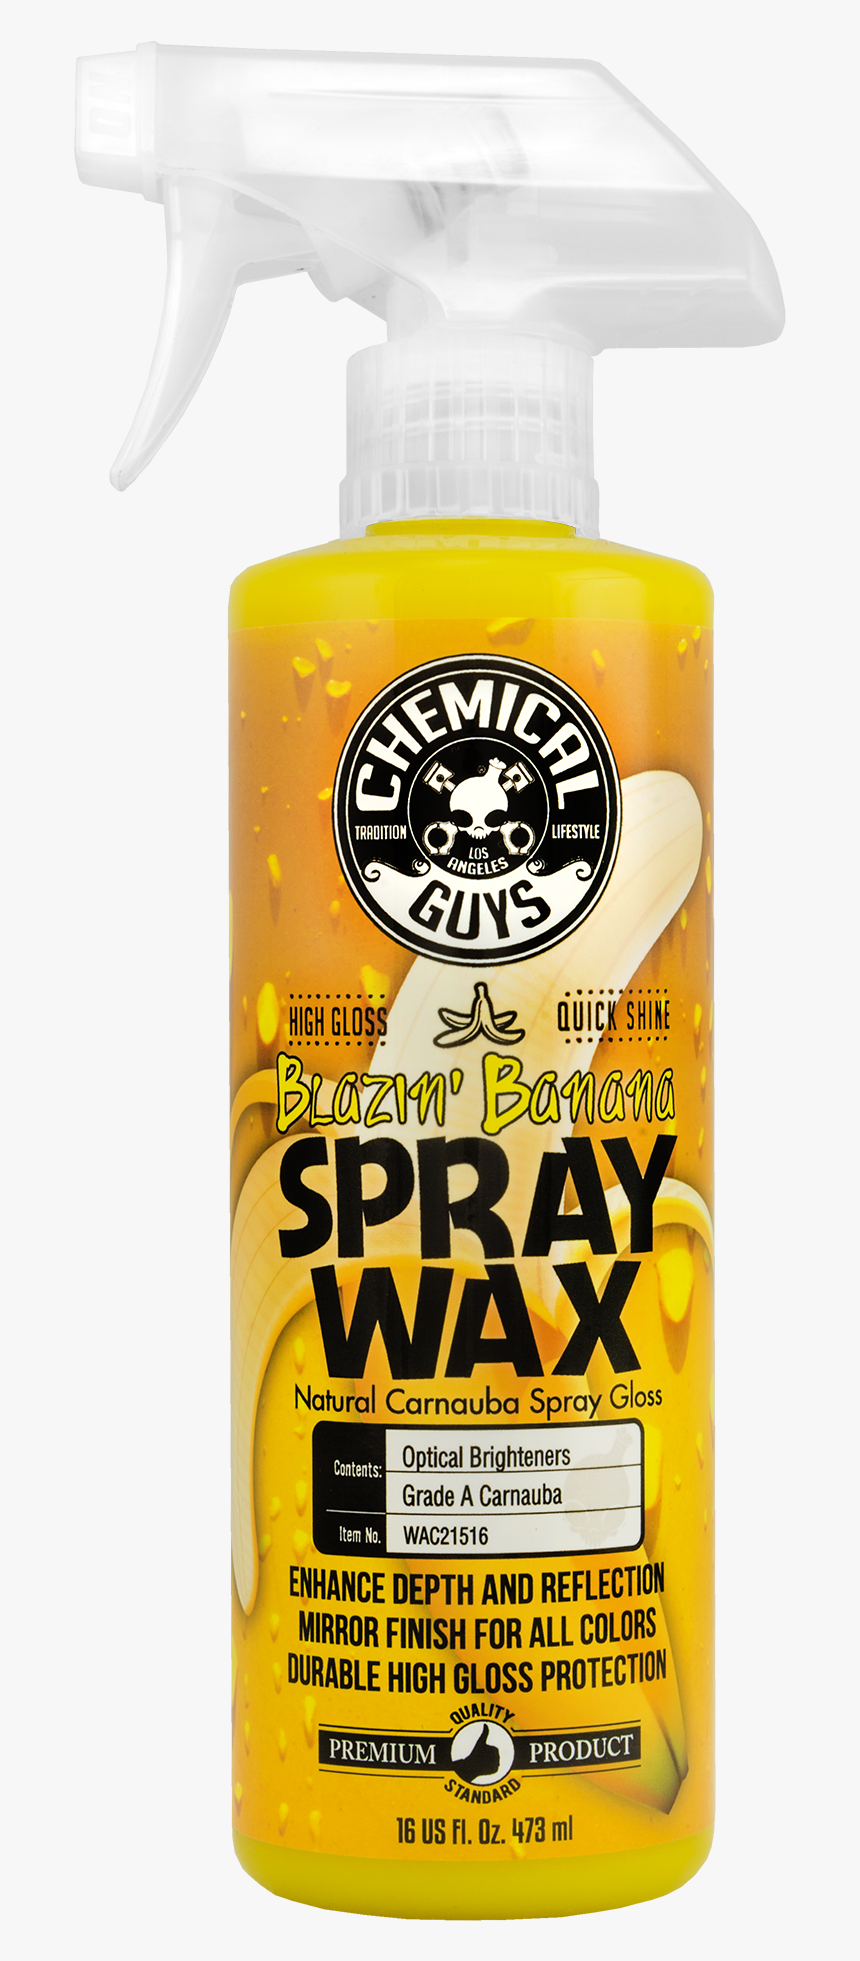 Banana Natural Carnauba Spray Wax - Chemical Guys Blazin Banana Spray Wax Review, HD Png Download, Free Download